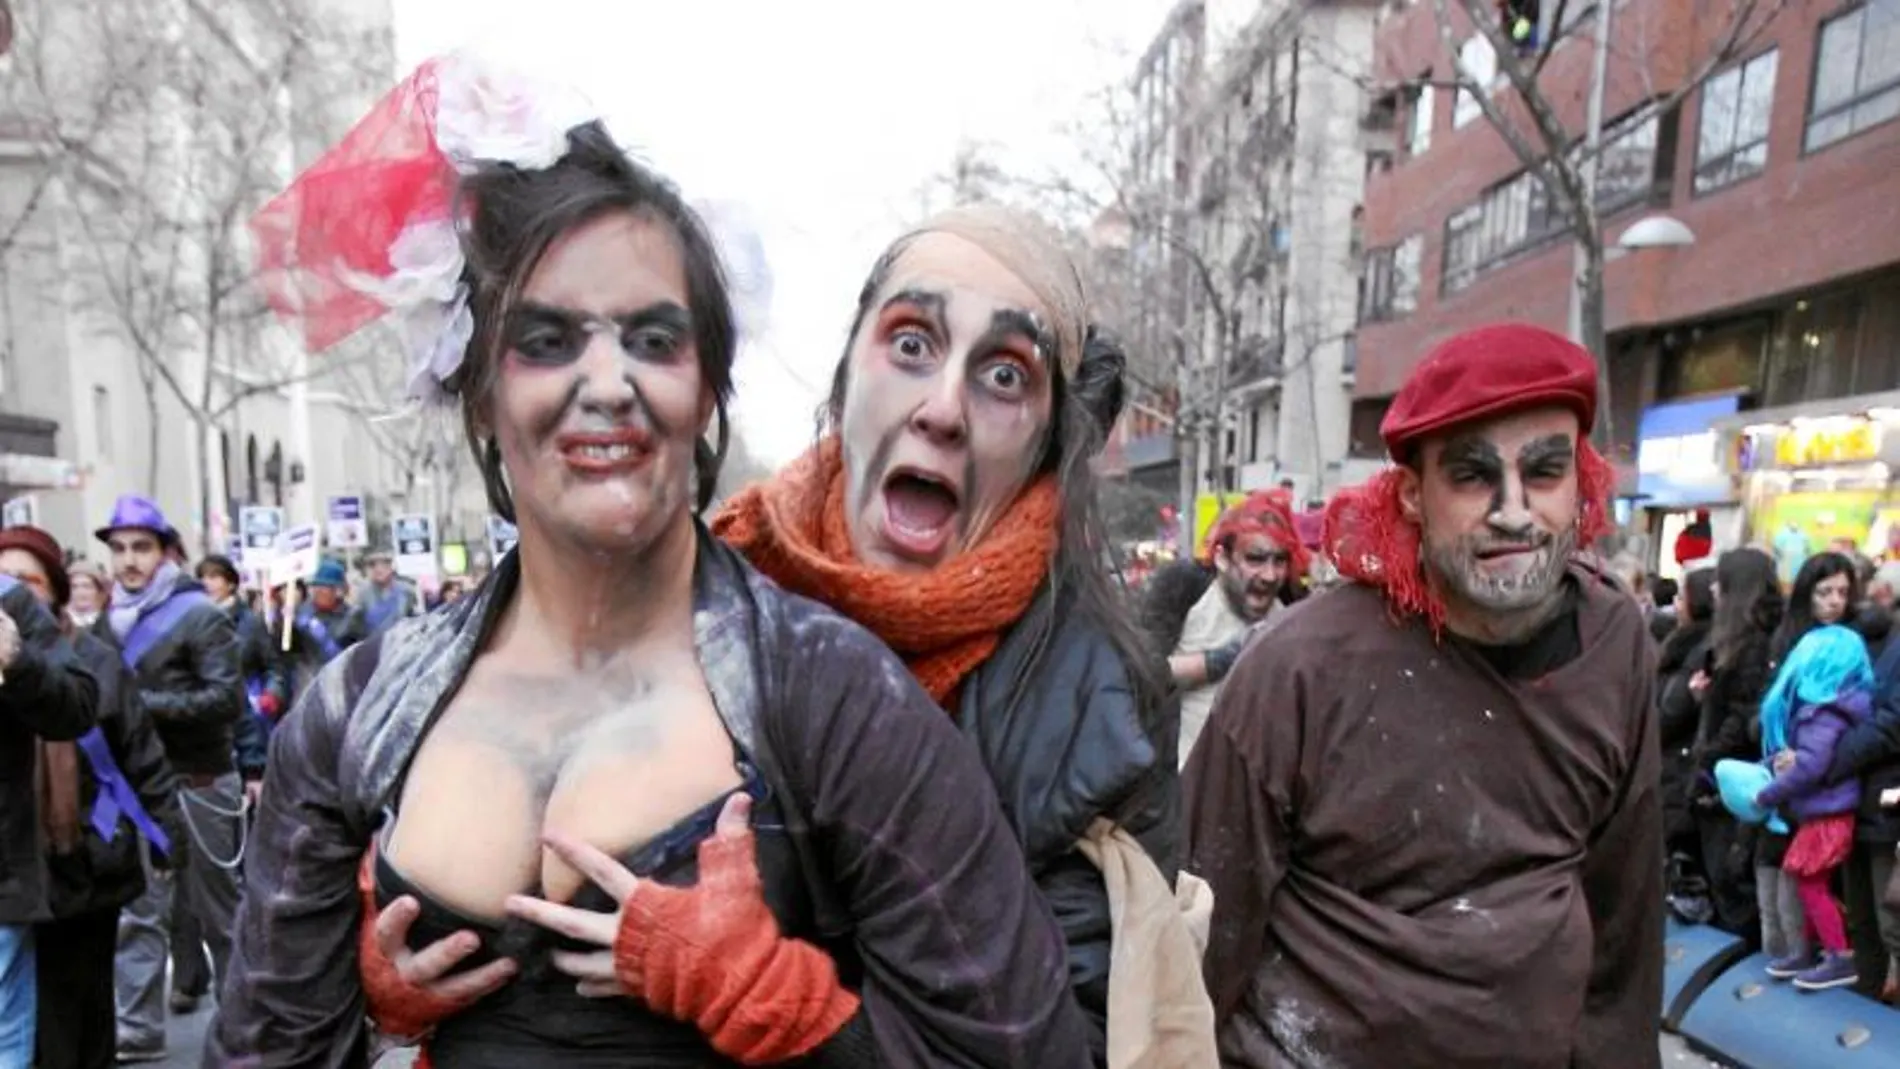 Personajes con disfraces soeces formaron parte de la comitiva del desfile del Carnaval de Tetuán